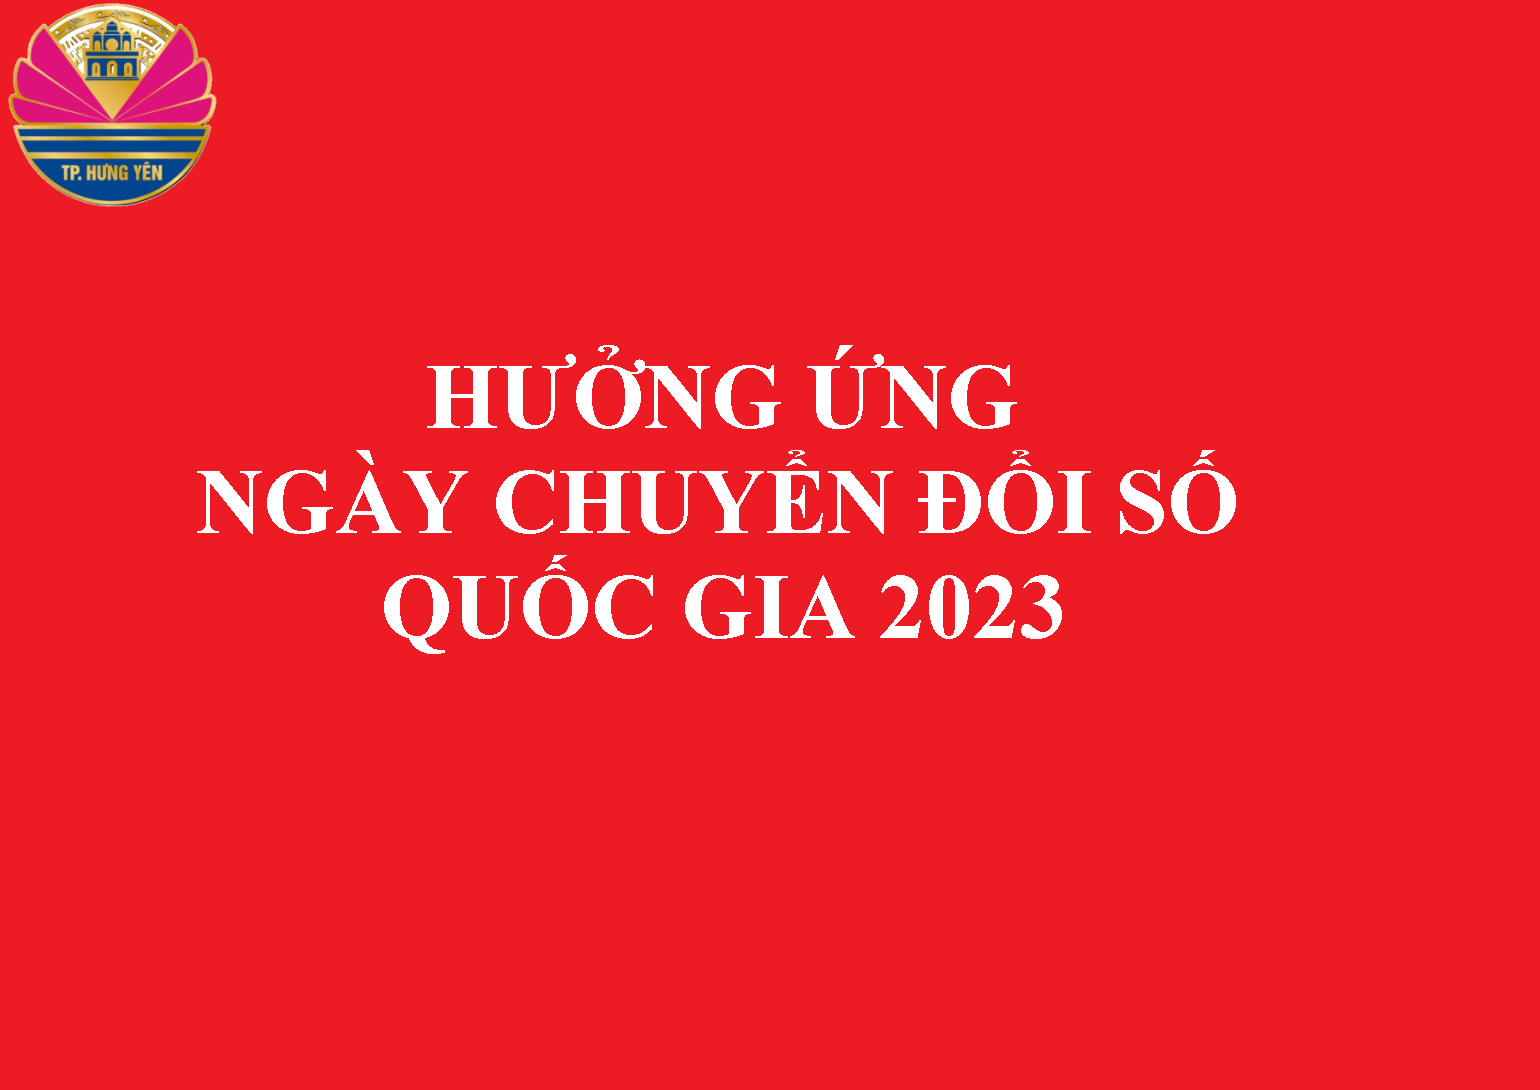 Triển khai hoạt động ngày Chuyển đổi số tỉnh Hưng Yên và hưởng ứng ngày chuyển đổi số quốc gia 10/10/2023